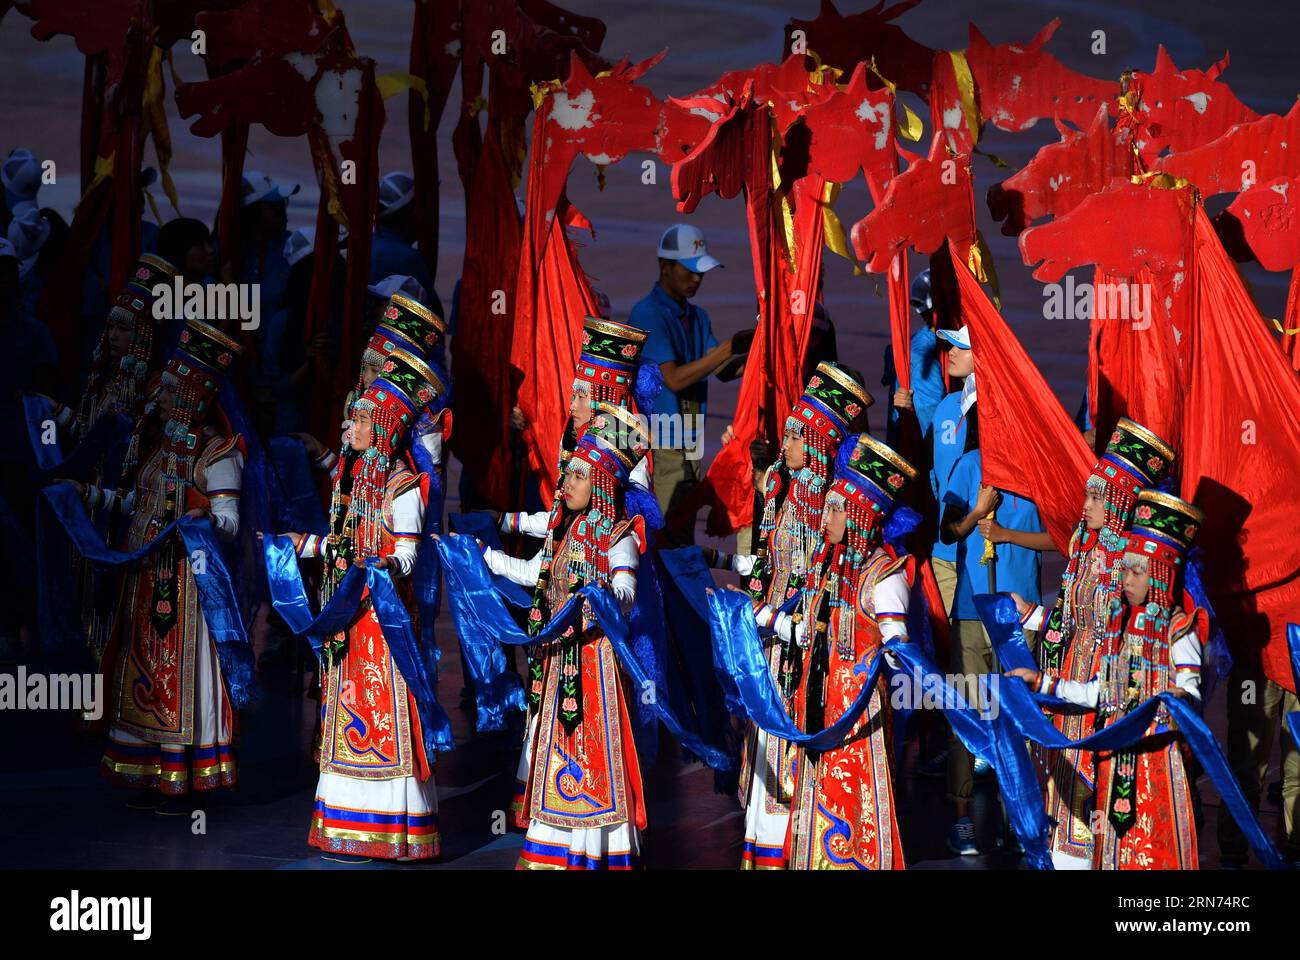 (150817) -- ORDOS, 17 août 2015 -- des artistes présentent hadas, une sorte de cadeau de bienvenue mongol, à l'occasion de la cérémonie de clôture des 10e Jeux traditionnels nationaux des minorités ethniques de Chine à Ordos, dans la région autonome de Mongolie intérieure du nord de la Chine, le 17 août 2015. Les 10e Jeux traditionnels nationaux des minorités ethniques de Chine, d'une durée de 9 jours, se sont clôturés ici le 17 août. (SP)CHINE-ORDOS-JEUX ETHNIQUES NATIONAUX-CÉRÉMONIE DE CLÔTURE(CN) RenxJunchuan PUBLICATIONxNOTxINxCHN 150817 Ordos août 17 2015 les artistes présentent Hadas un enfant de salut mongol poison LORS de la cérémonie de CLÔTURE DE la 10e Trad nationale Banque D'Images